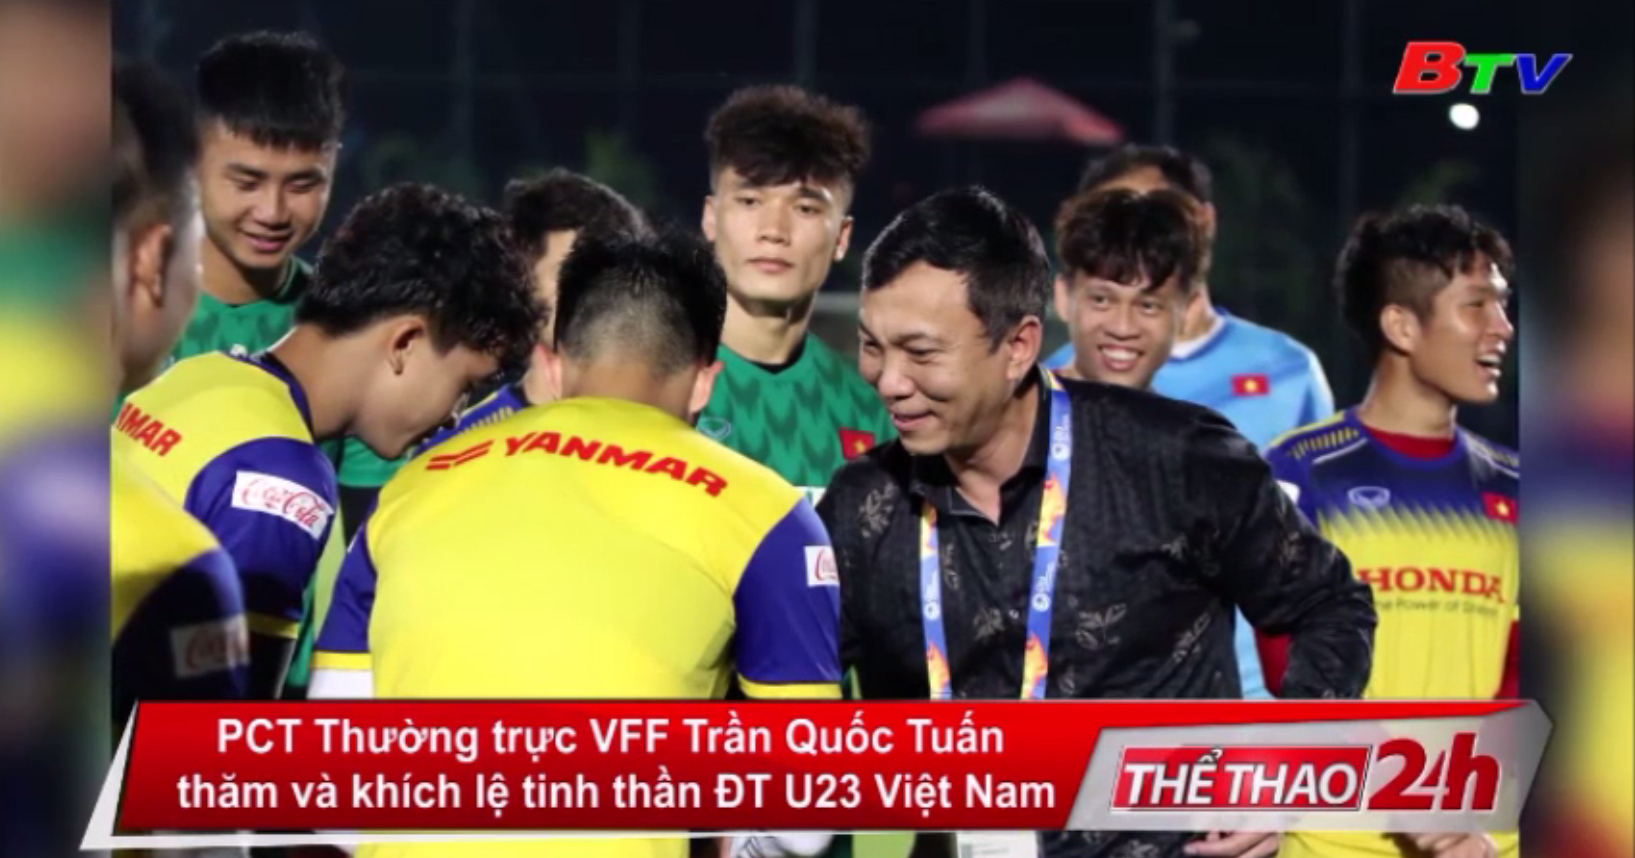 PCT Thường trực VFF Trần Quốc Tuấn thăm và khích lệ tinh thần ĐT U23 Việt Nam